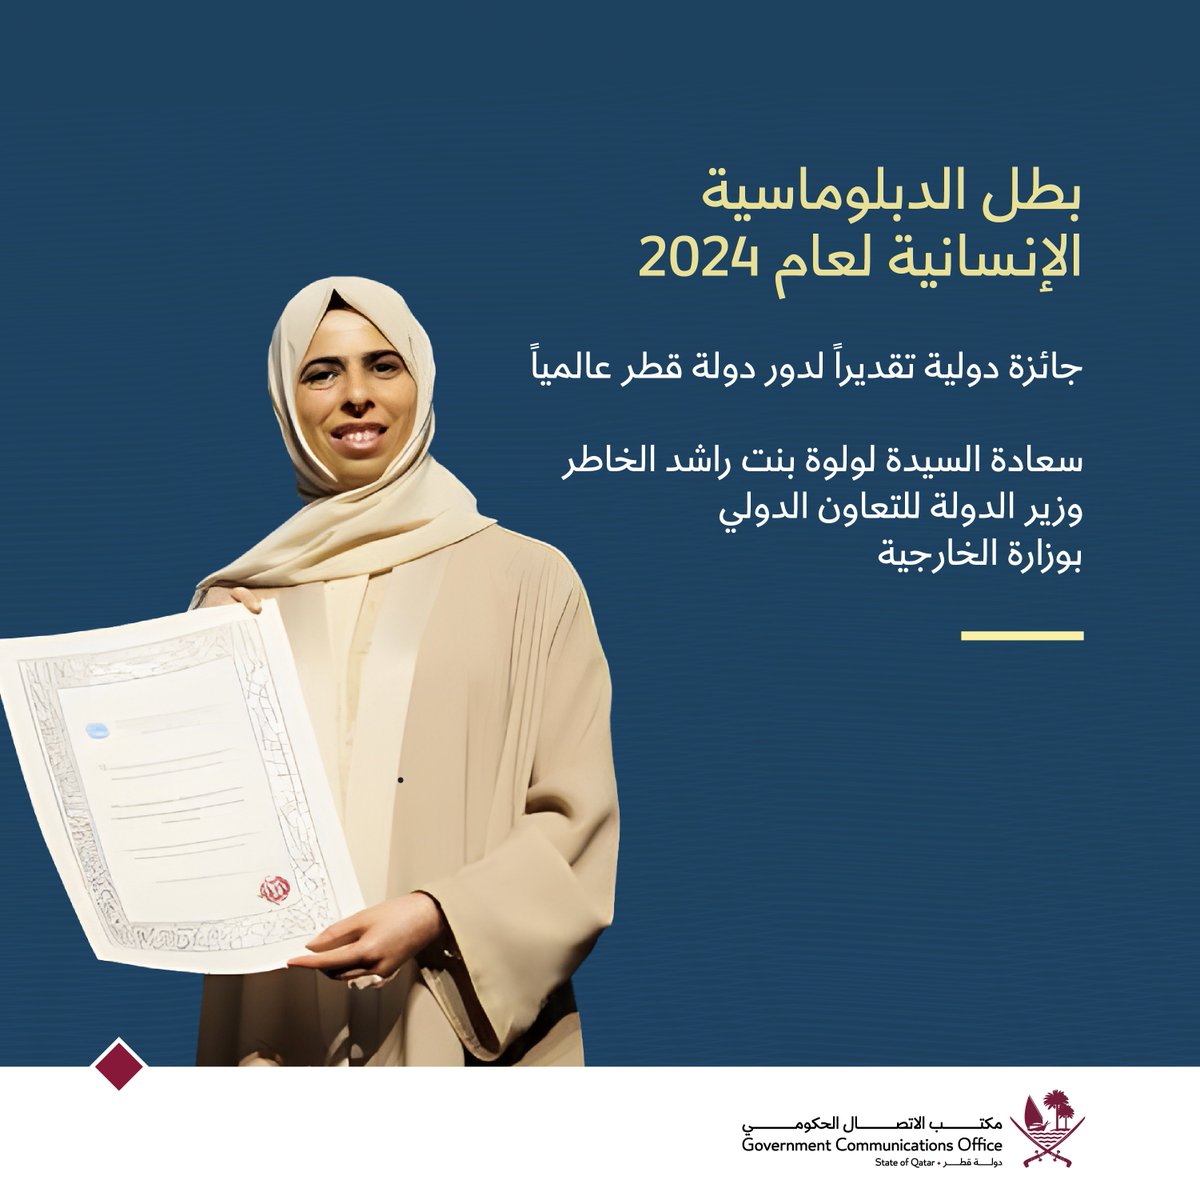 حصلت دولة #قطر على جائزة 'بطل الدبلوماسية الإنسانية' لعام 2024، التي تقدمها الجمعية العامة لبرلمان البحر الأبيض المتوسط، وذلك تقديراً للدبلوماسية القطرية النشطة على صعيد المساعدات الإنسانية والإغاثات، وجهودها لصنع السلام، وتسلّمت الجائزة، في مدينة براغا البرتغالية، سعادة السيدة